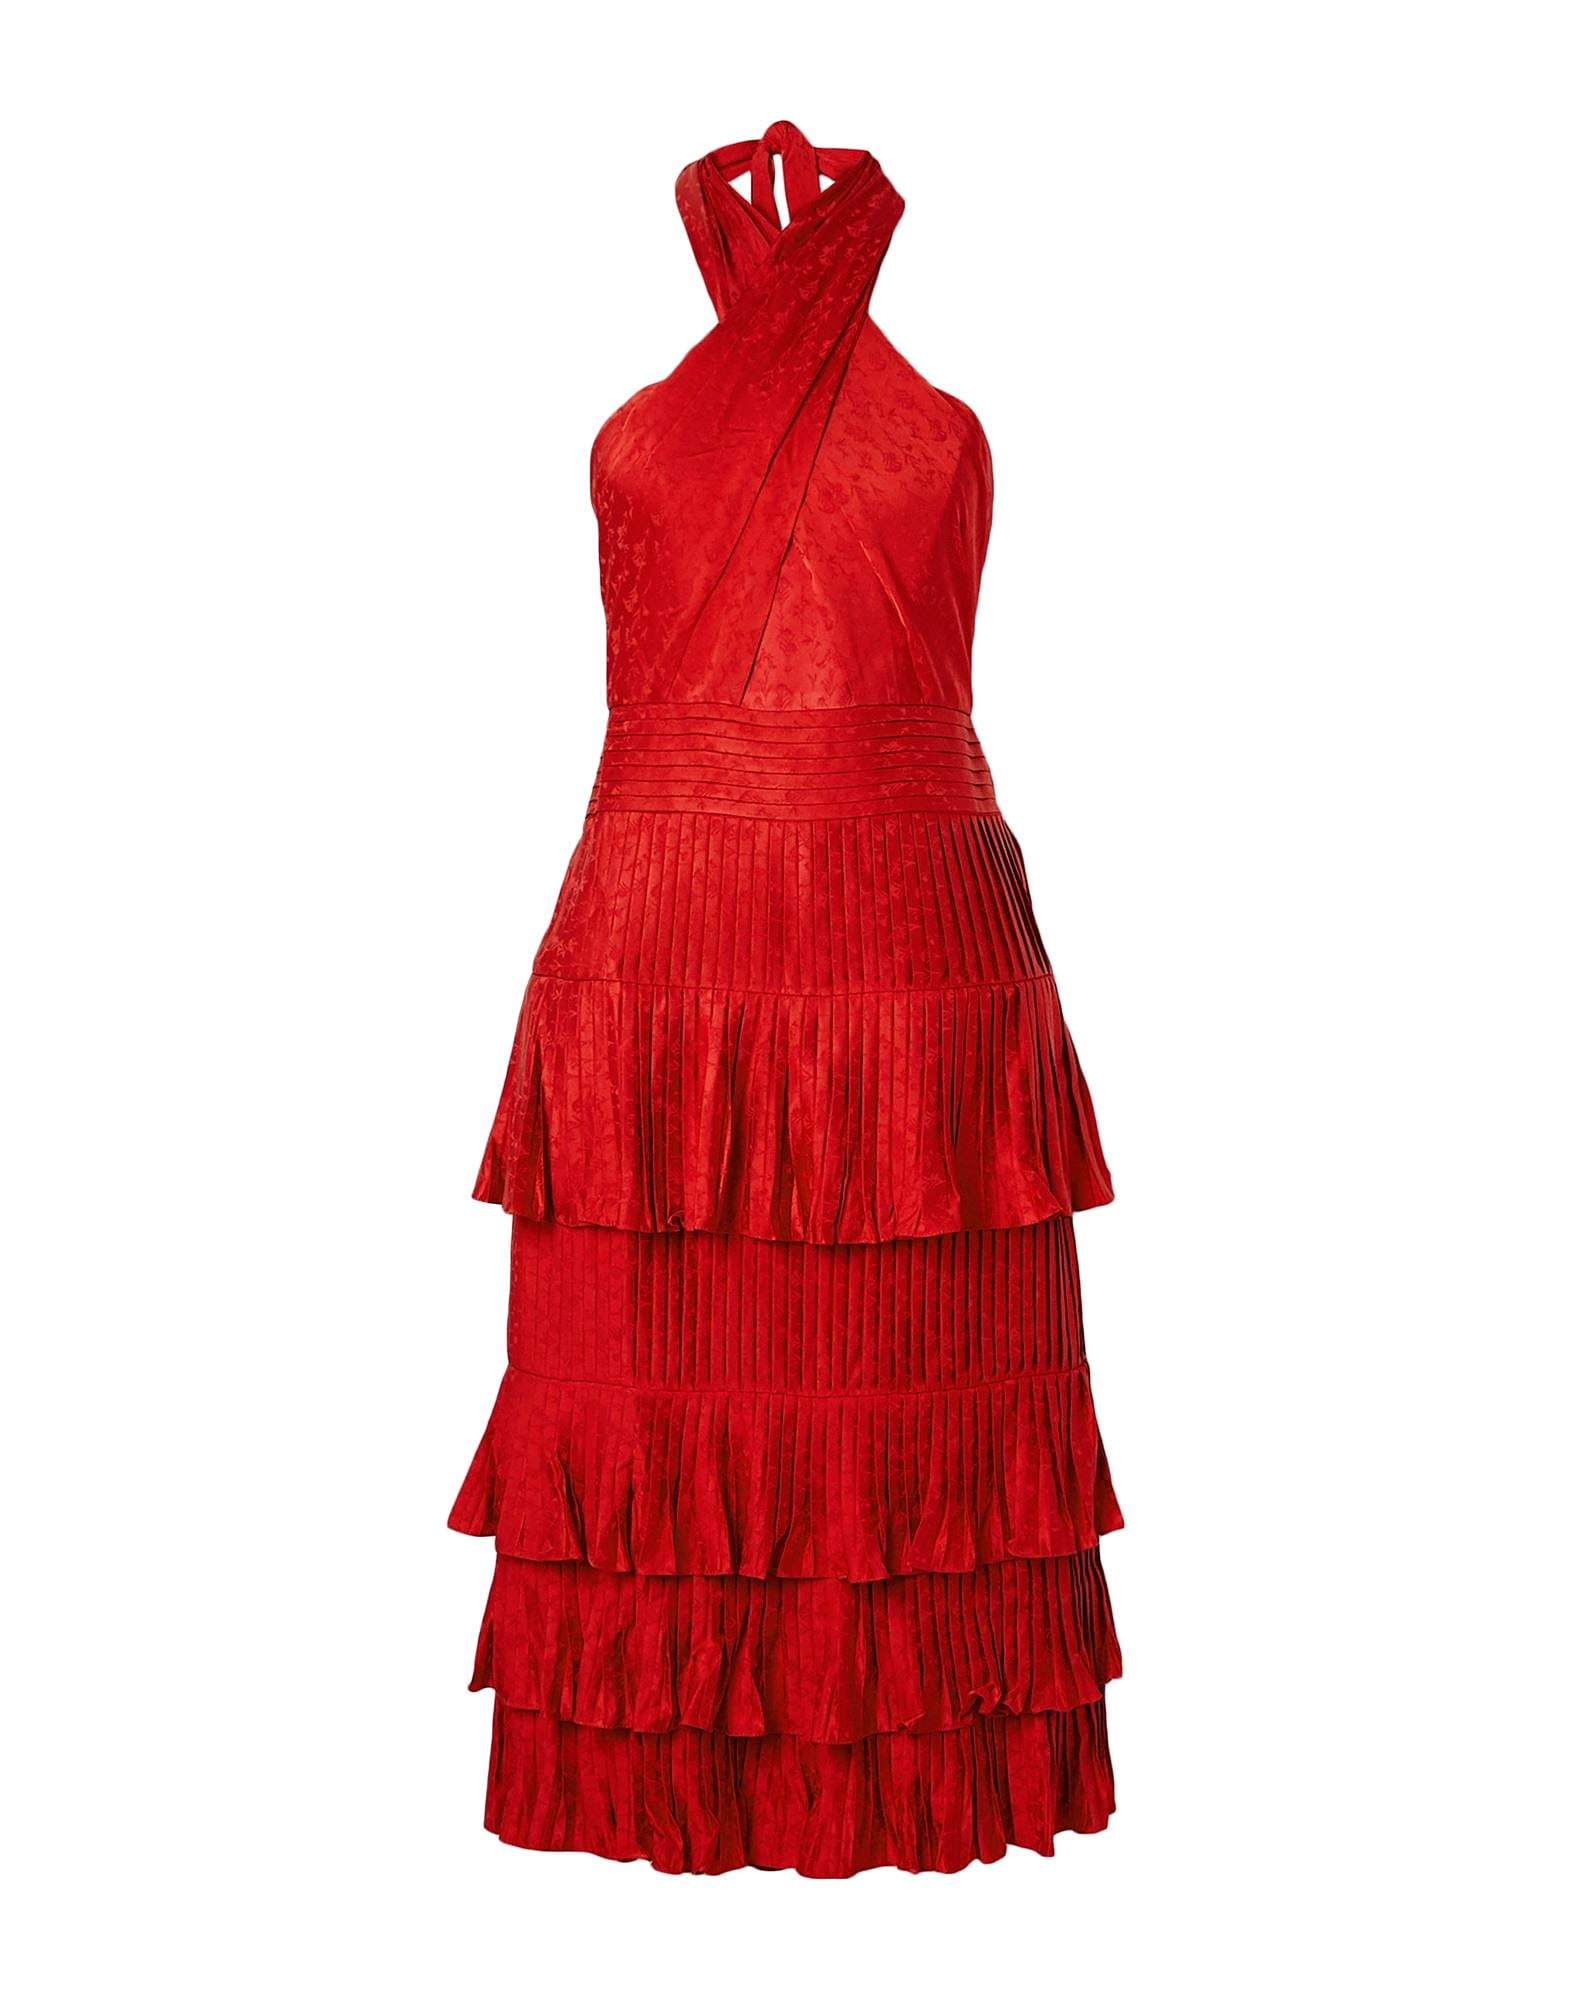 Vestido rojo con cuello halter de Johanna Ortiz.